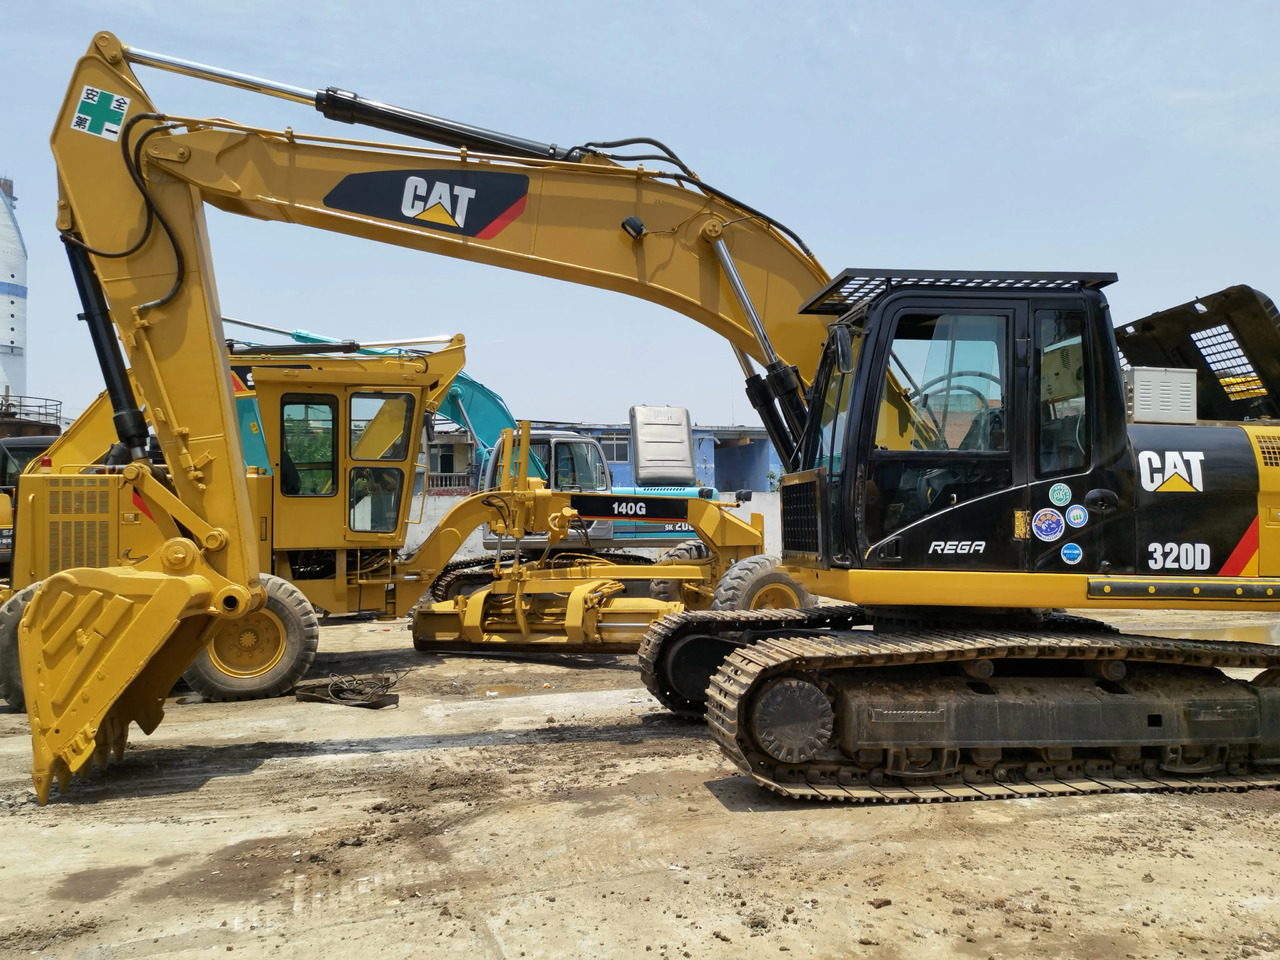 Crawler excavator good condition used excavator caterpillar 320D used cat excavator 320d for sale: picture 5